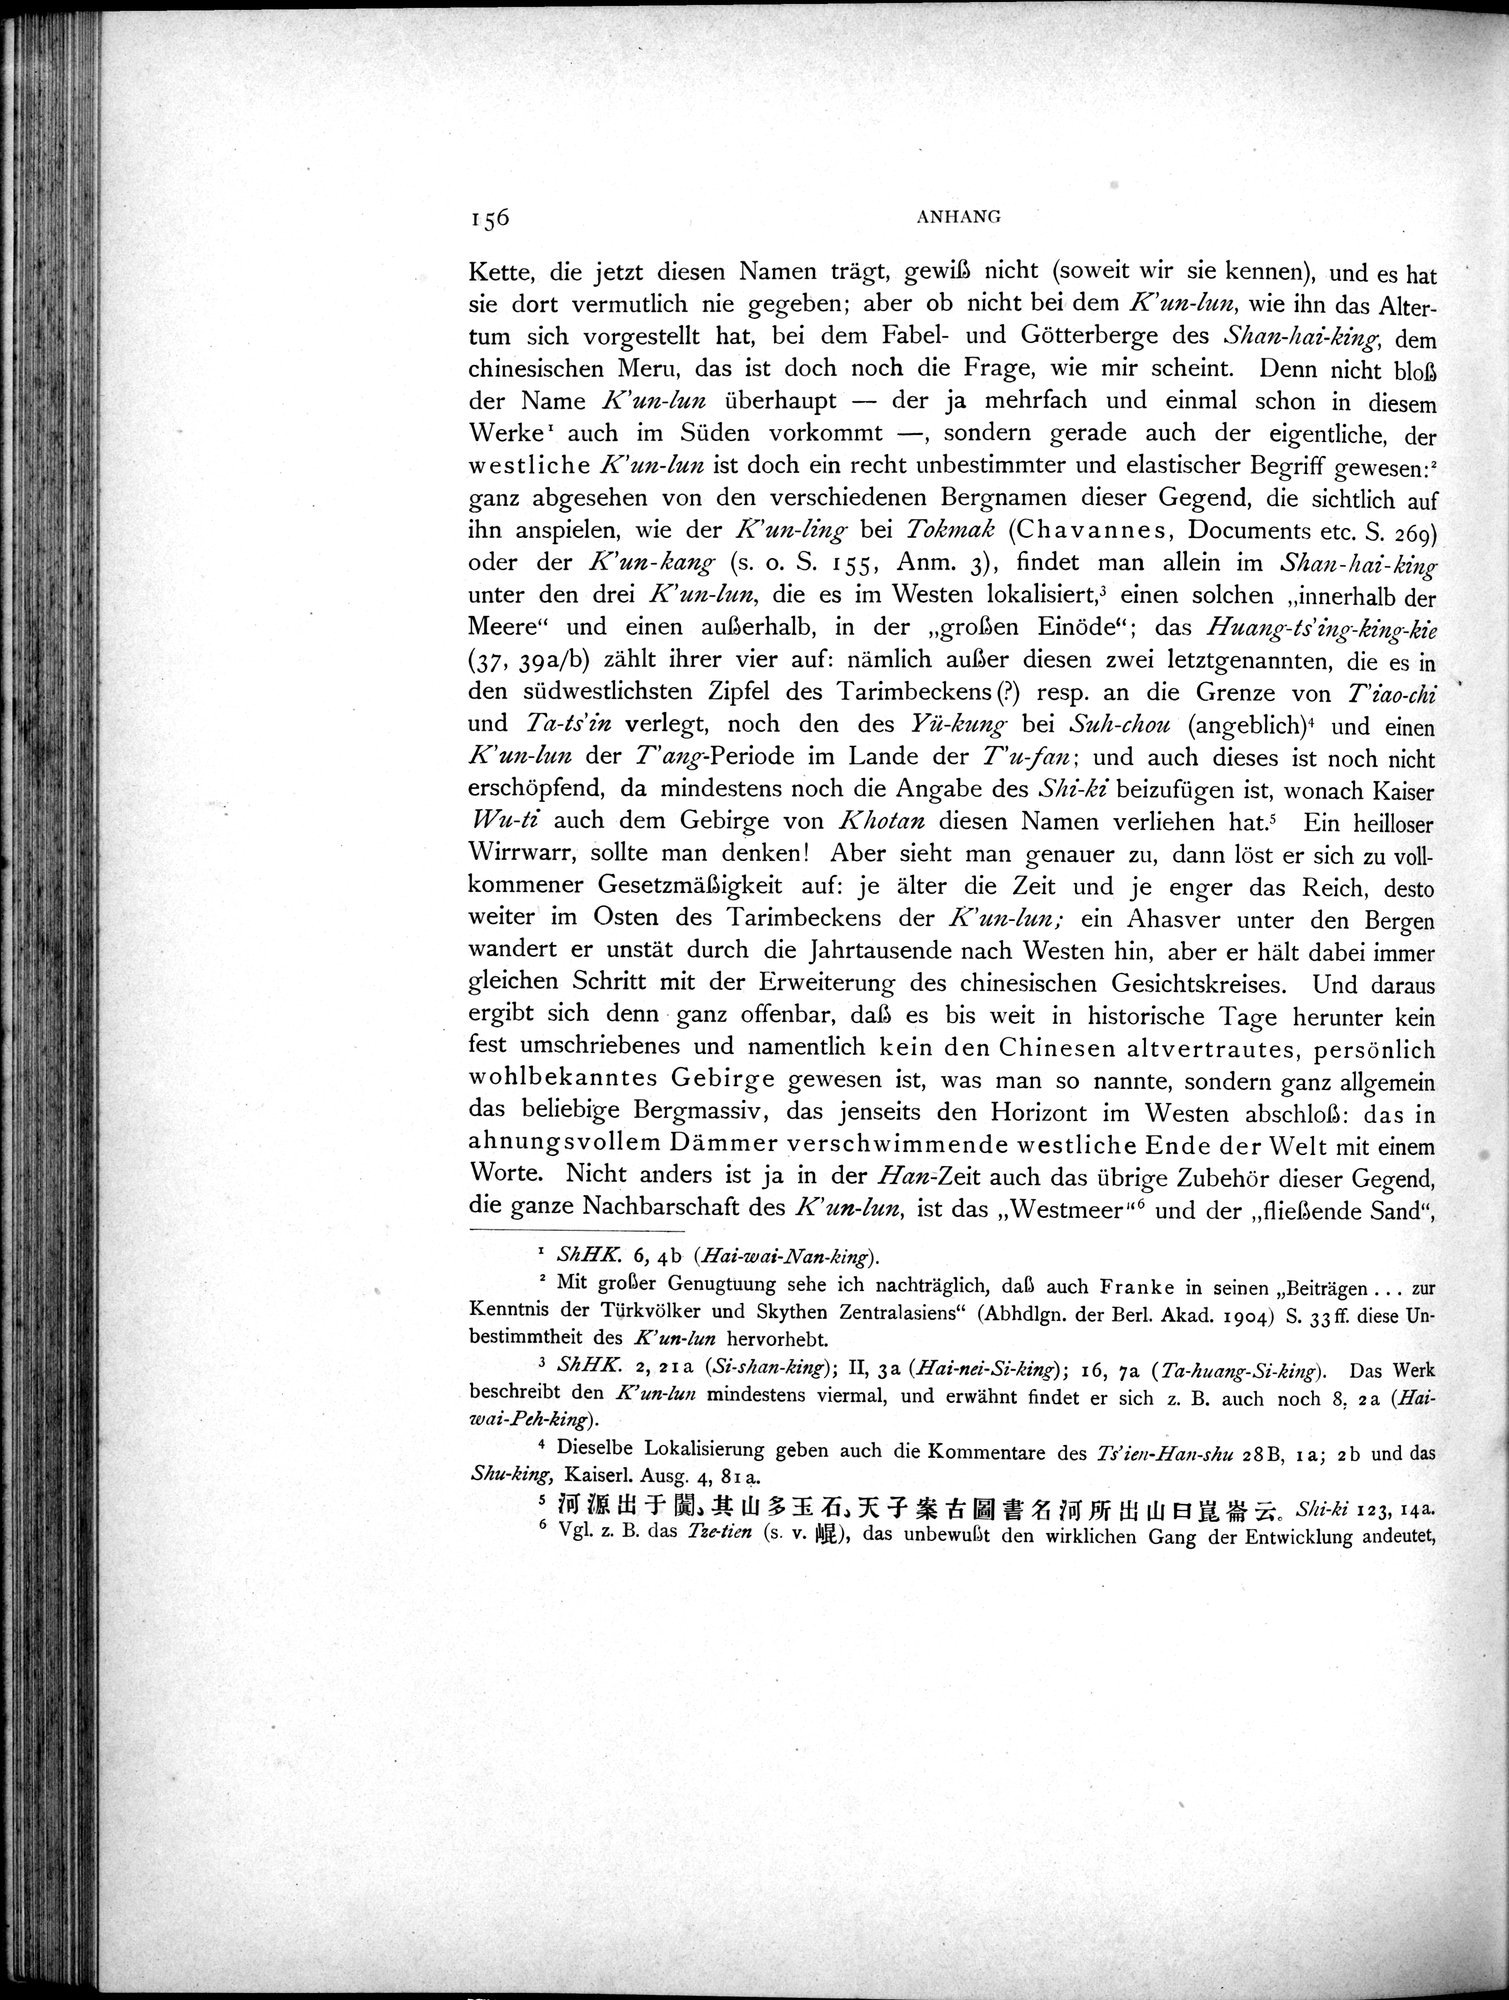 Die Chinesischen Handschriften- und sonstigen Kleinfunde Sven Hedins in Lou-lan : vol.1 / Page 180 (Grayscale High Resolution Image)